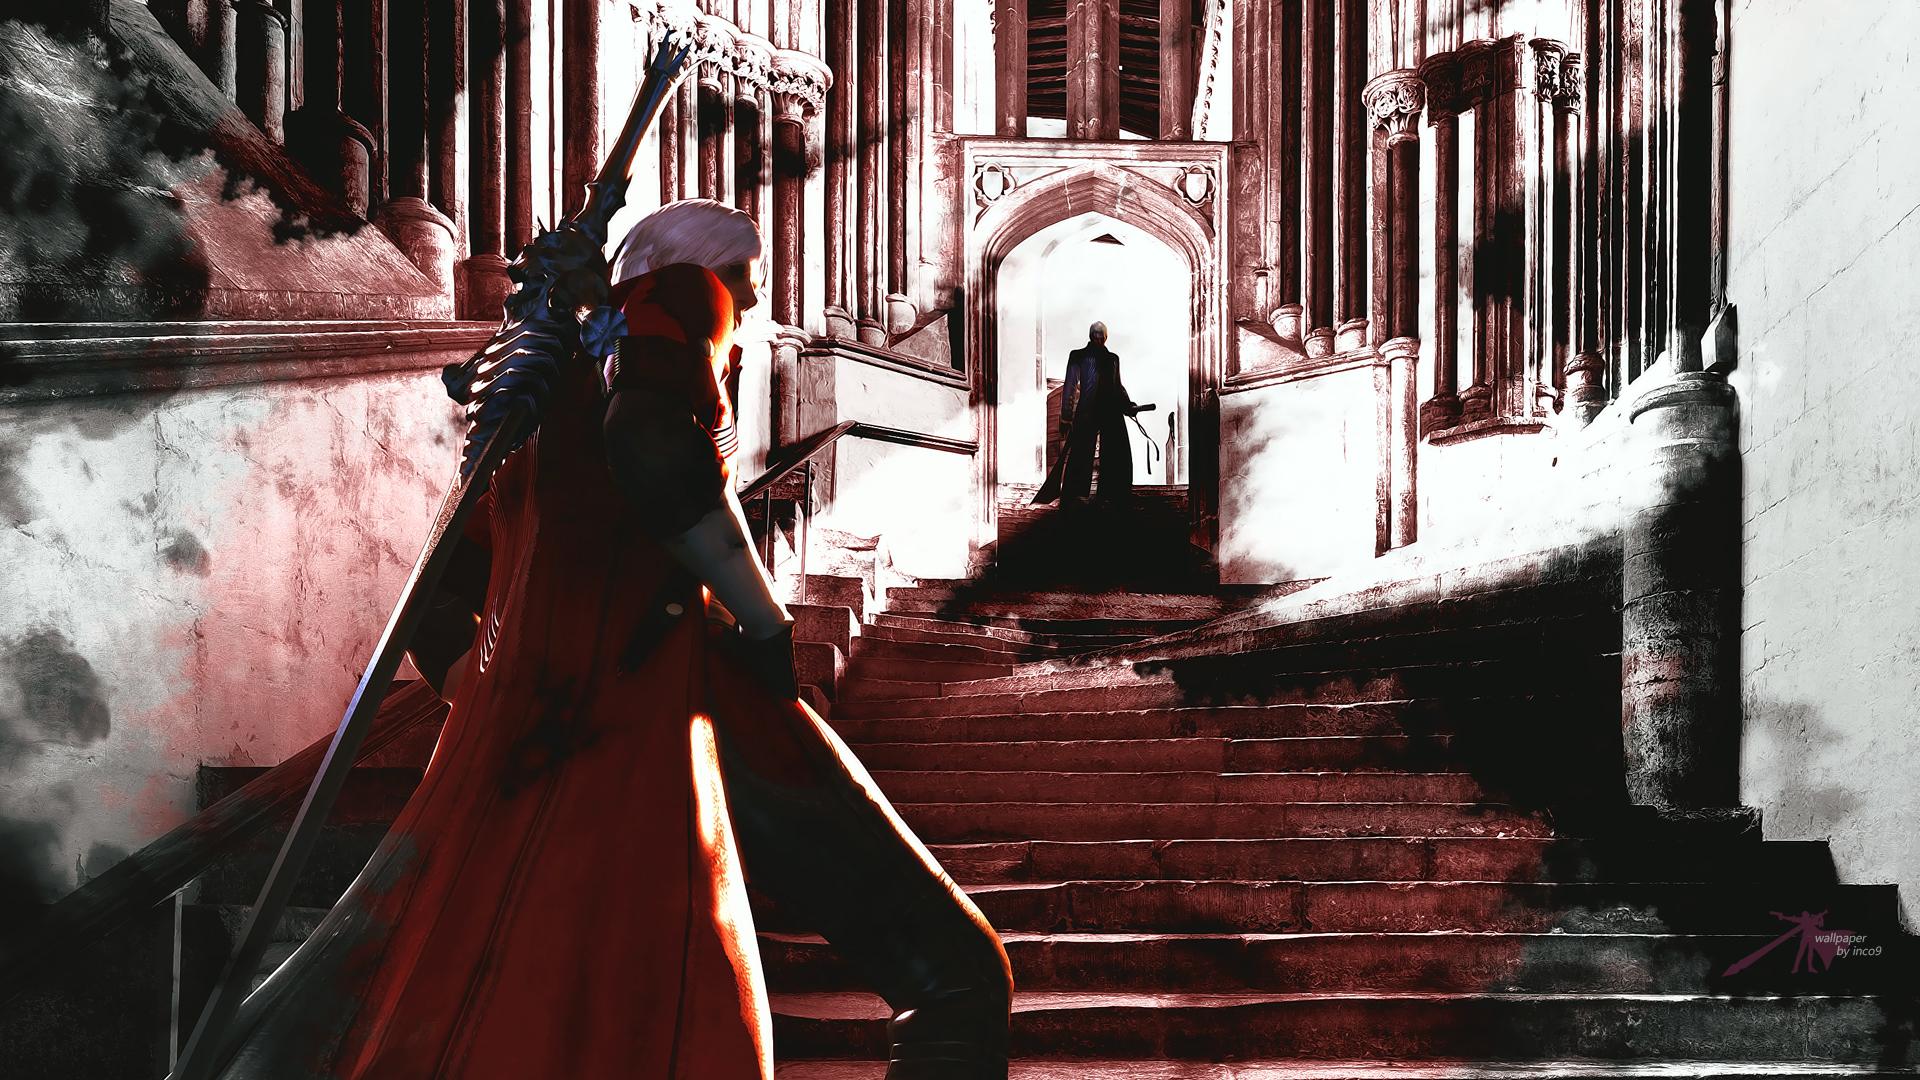 Dante vs. Vergil Devil May Cry 5 4K Wallpaper #7.2467